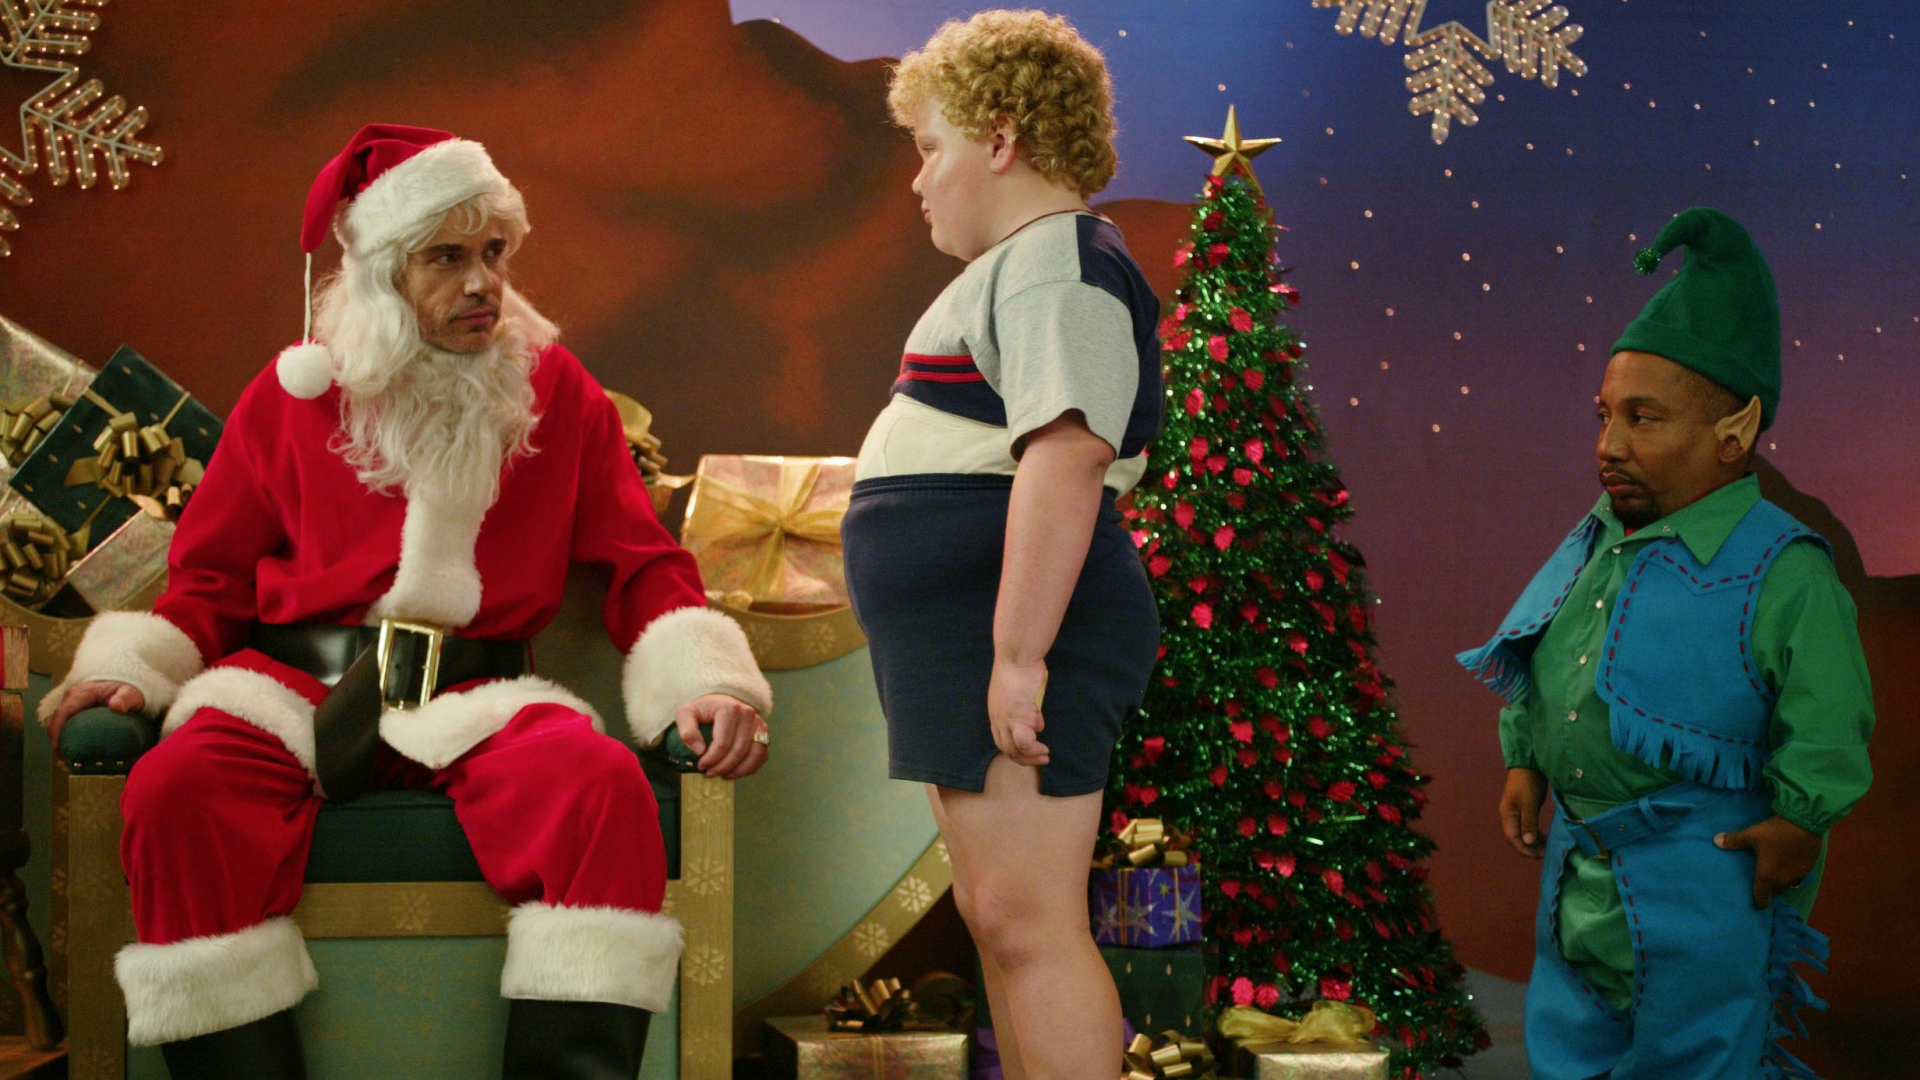 bad santa, Comedy, Christmas, Bad, Santa Wallpaper